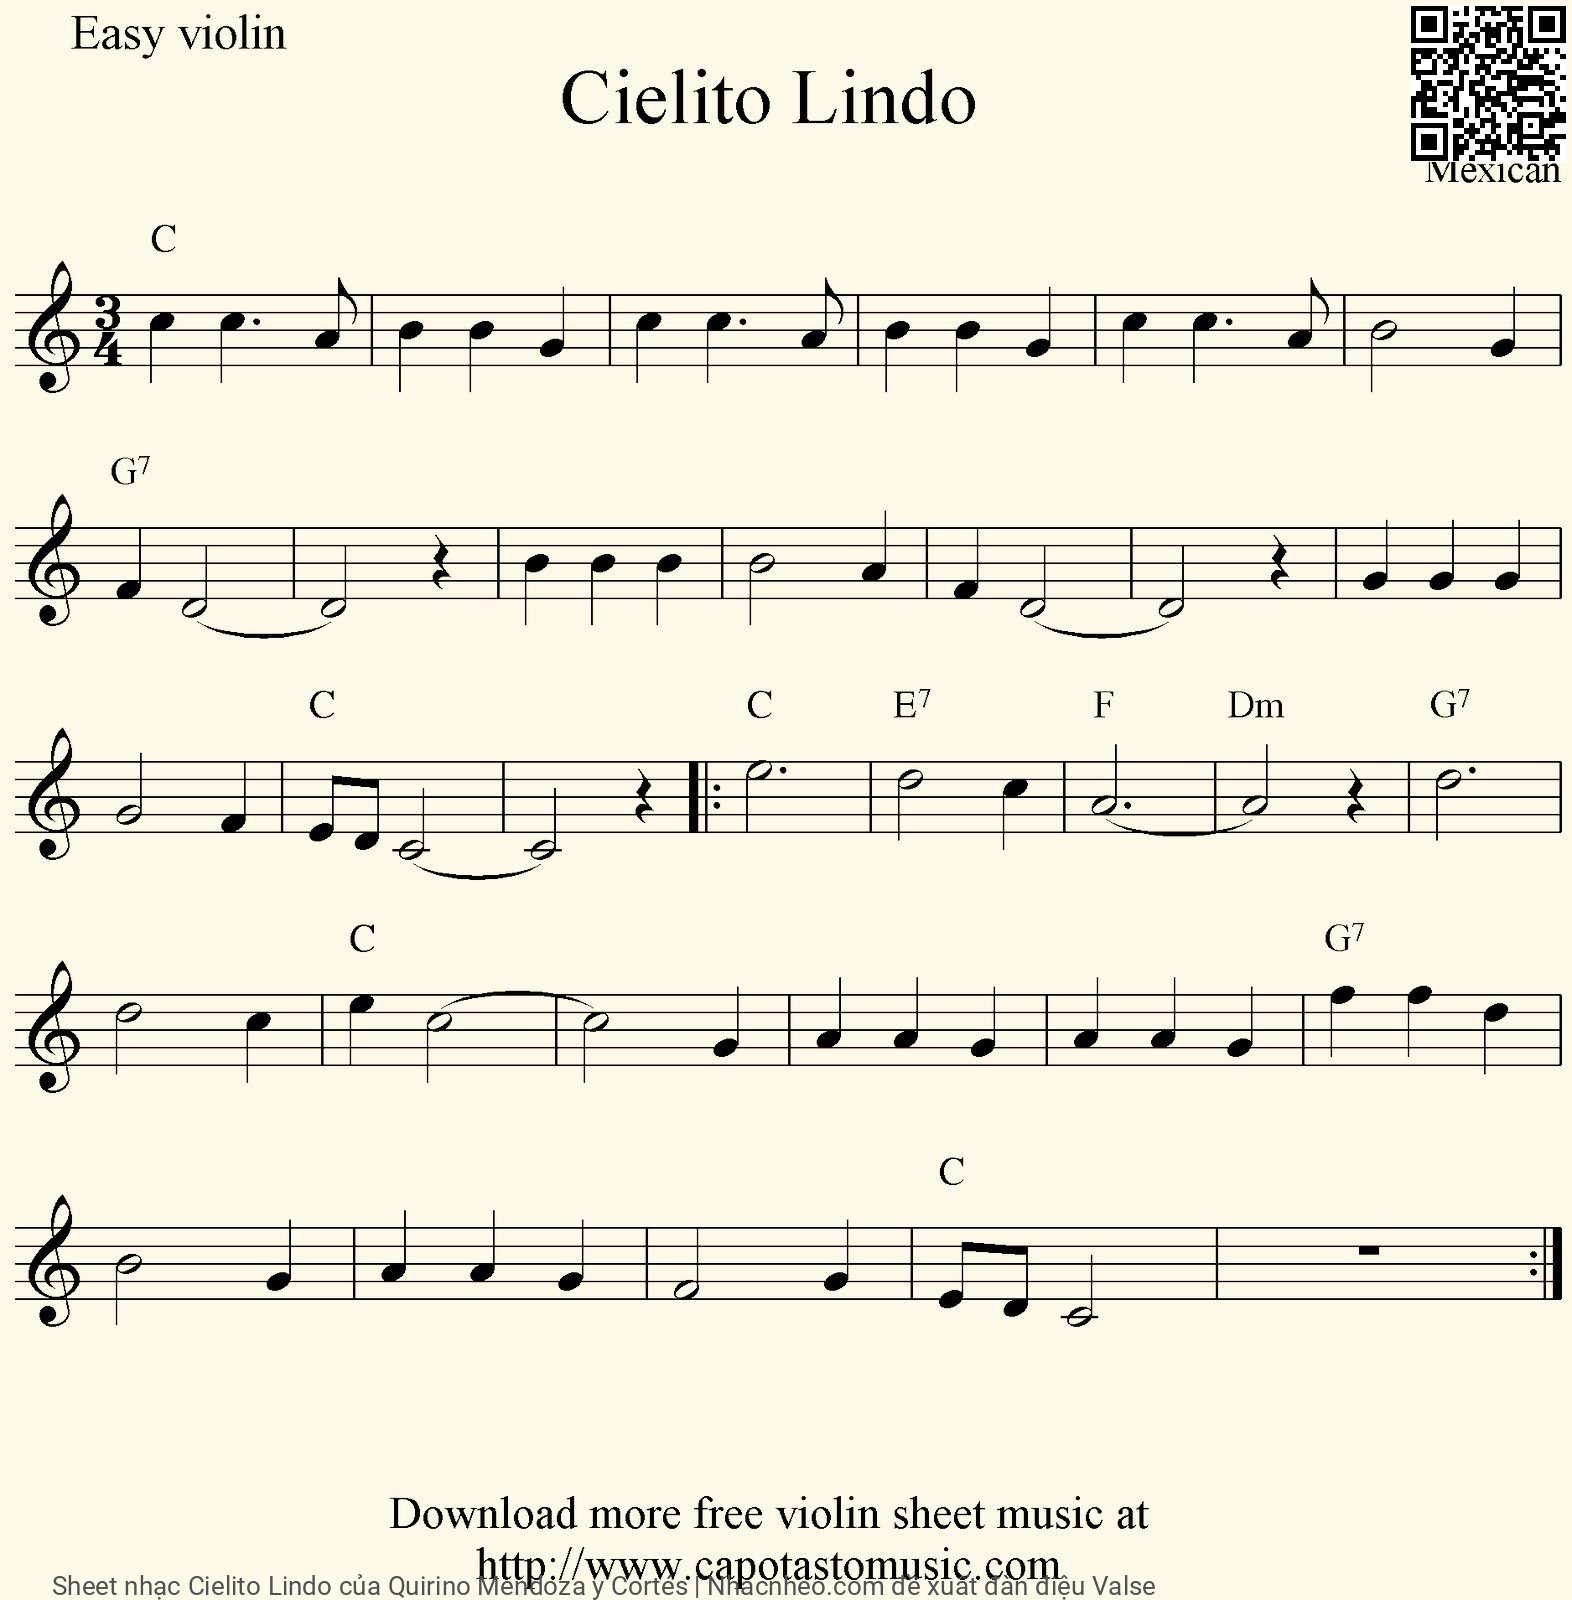 Sheet nhạc Cielito Lindo - Quirino Mendoza Y Cortés